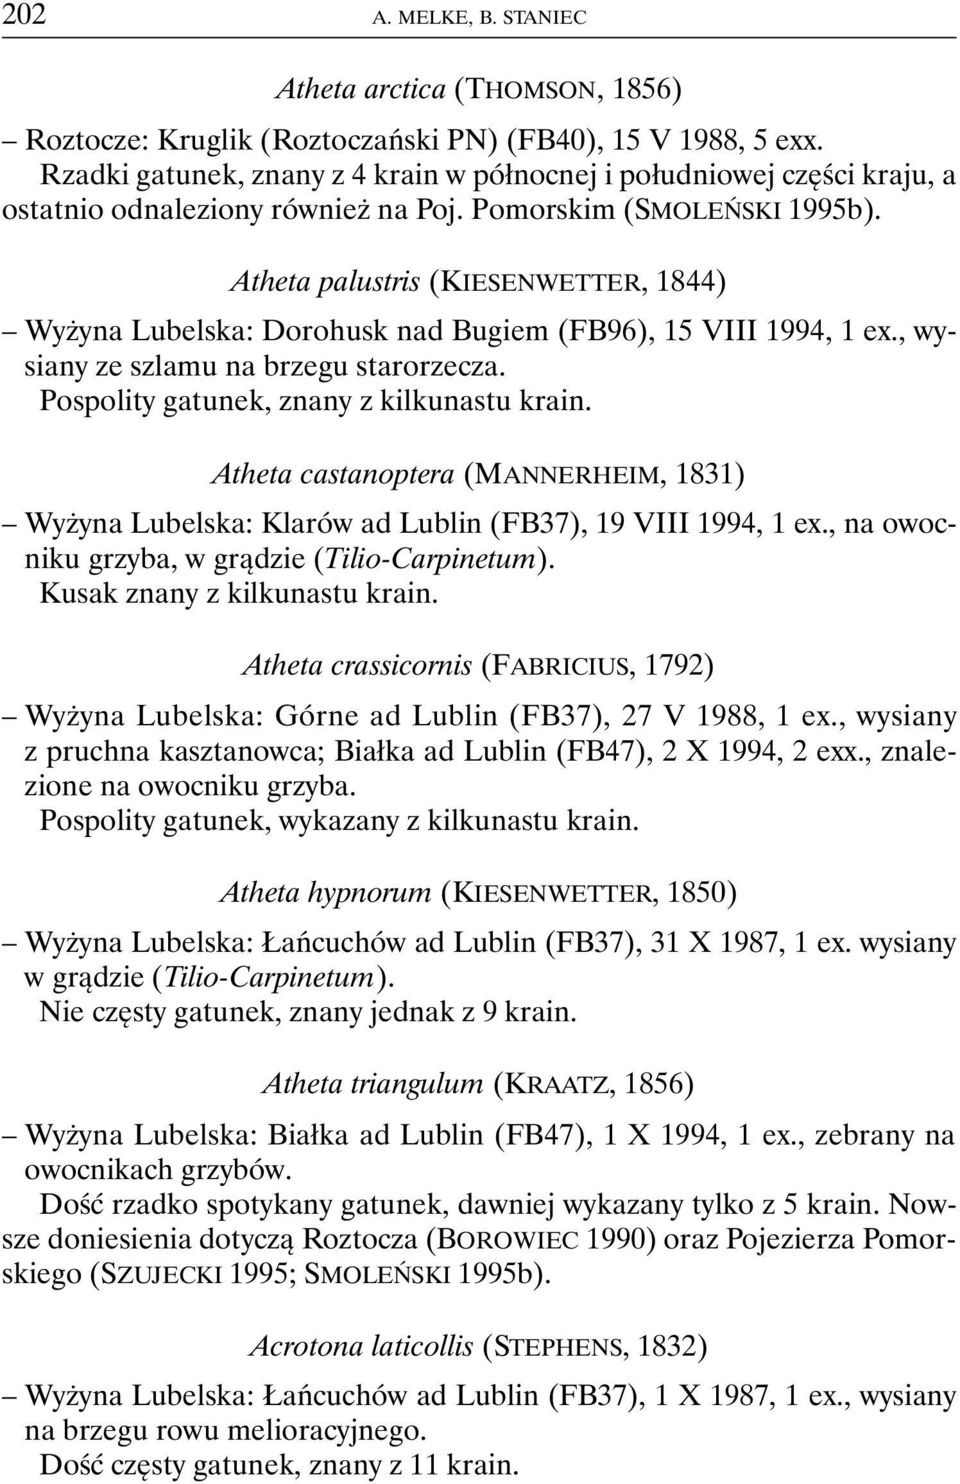 Atheta palustris (KIESENWETTER, 1844) Wyżyna Lubelska: Dorohusk nad Bugiem (FB96), 15 VIII 1994, 1 ex., wysiany ze szlamu na brzegu starorzecza. Pospolity gatunek, znany z kilkunastu krain.